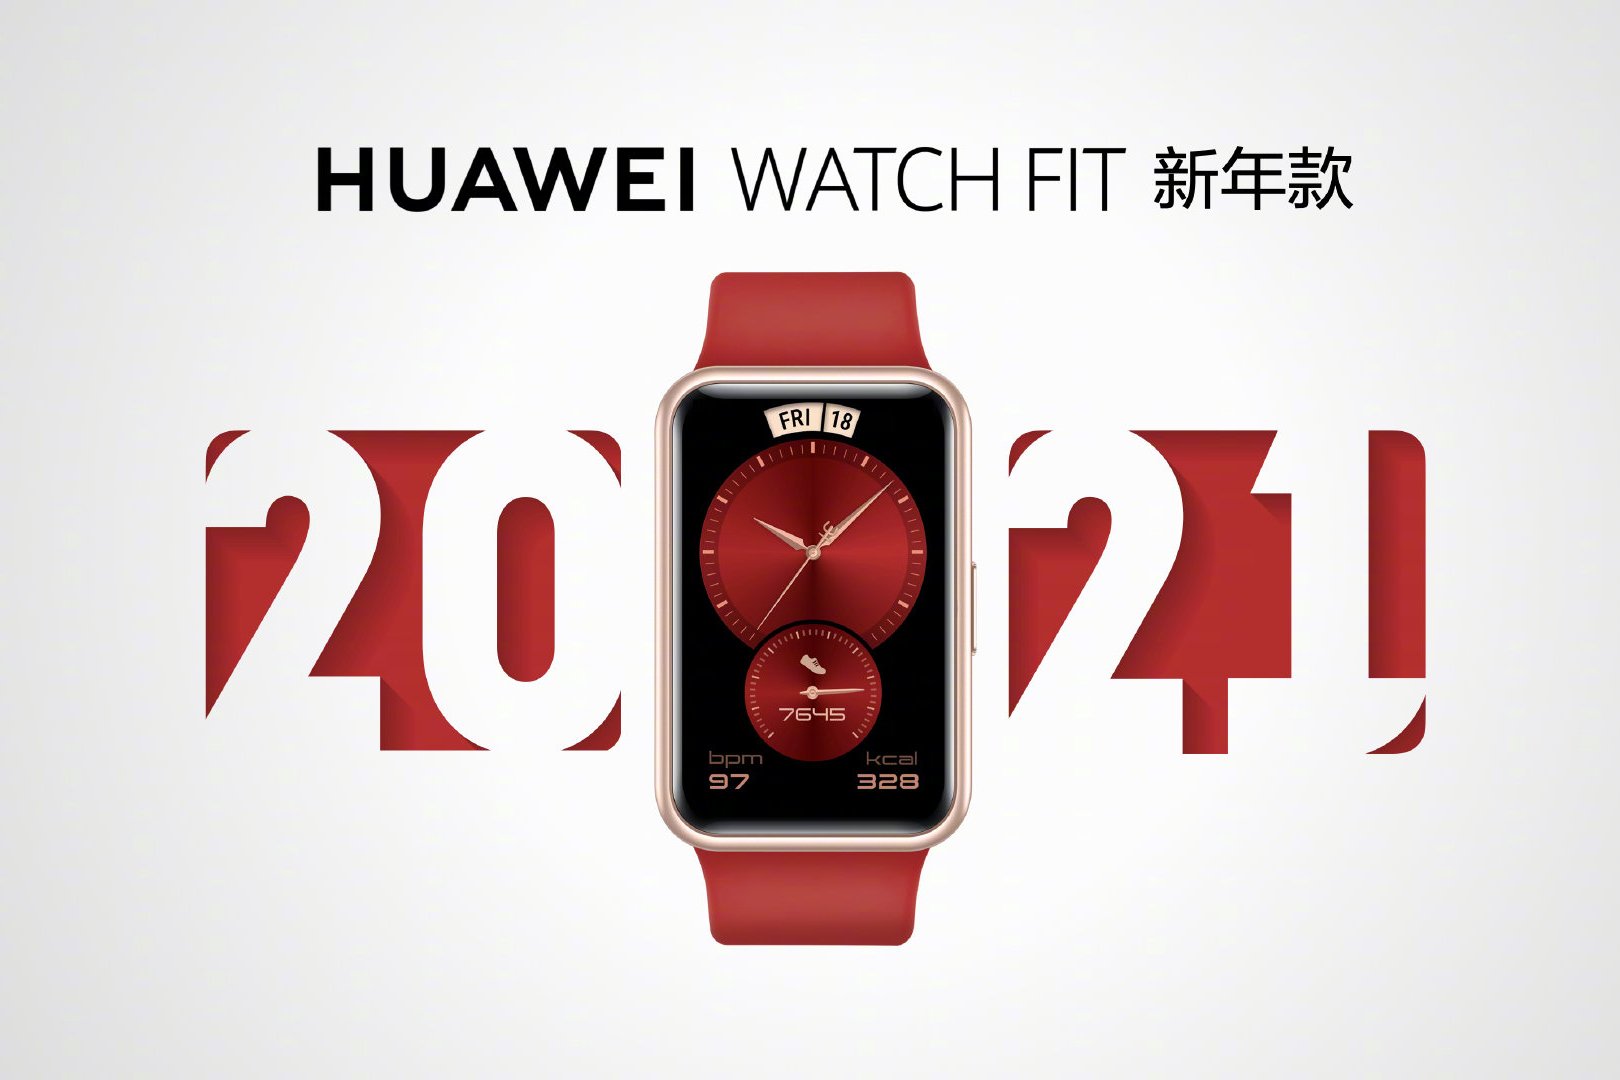 HUAWEI Watch Fit รุ่นปีใหม่